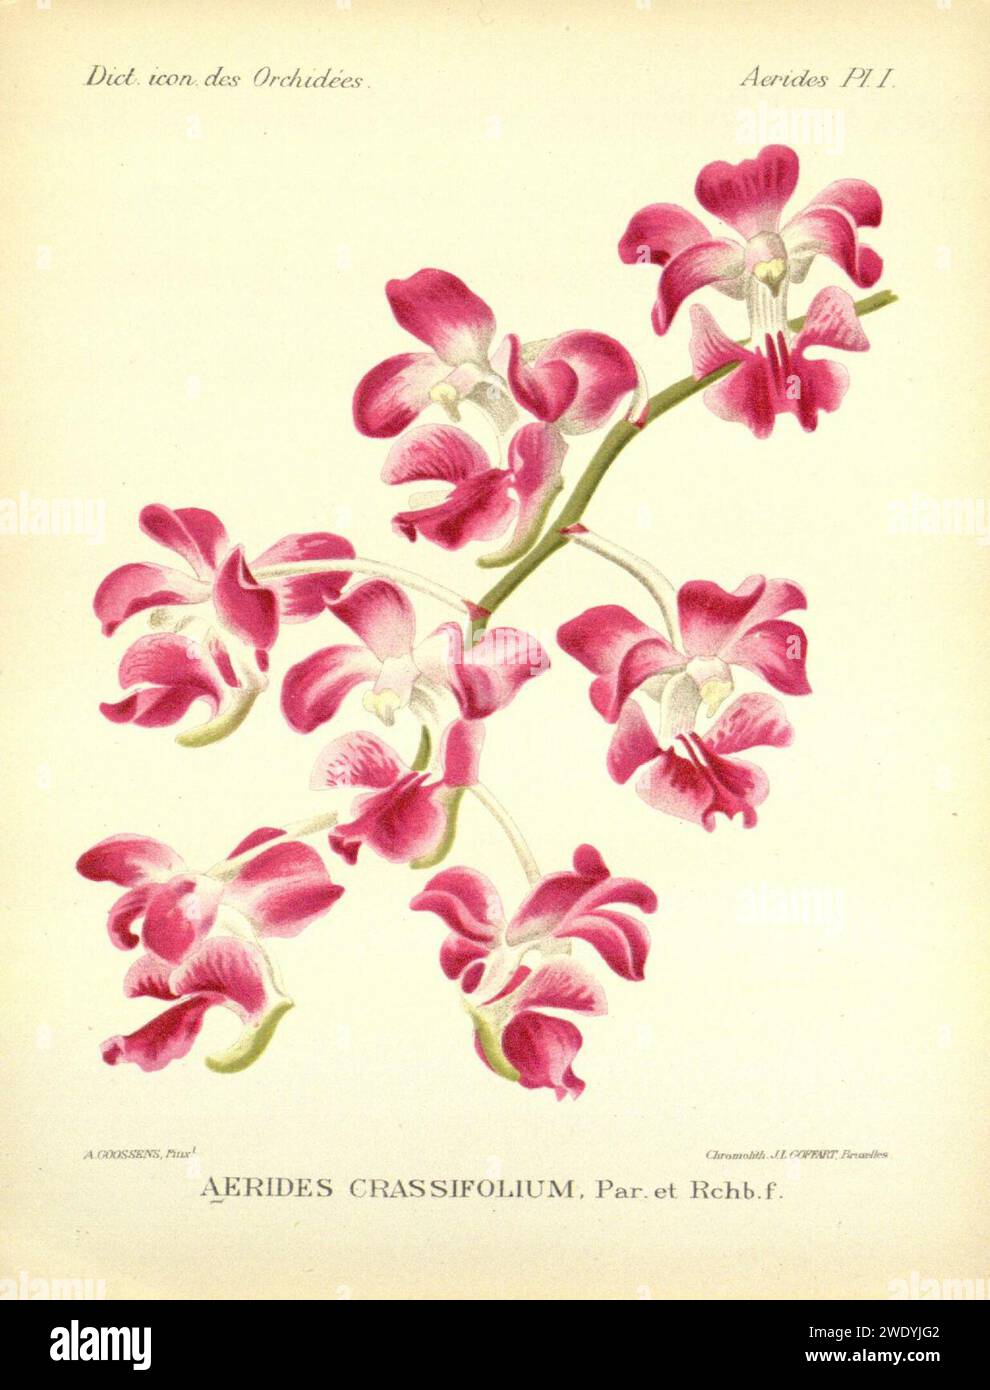 Aerides crassifolia Dict. Icon. Orchid., Aerides pl.1 (1896). Stock Photo